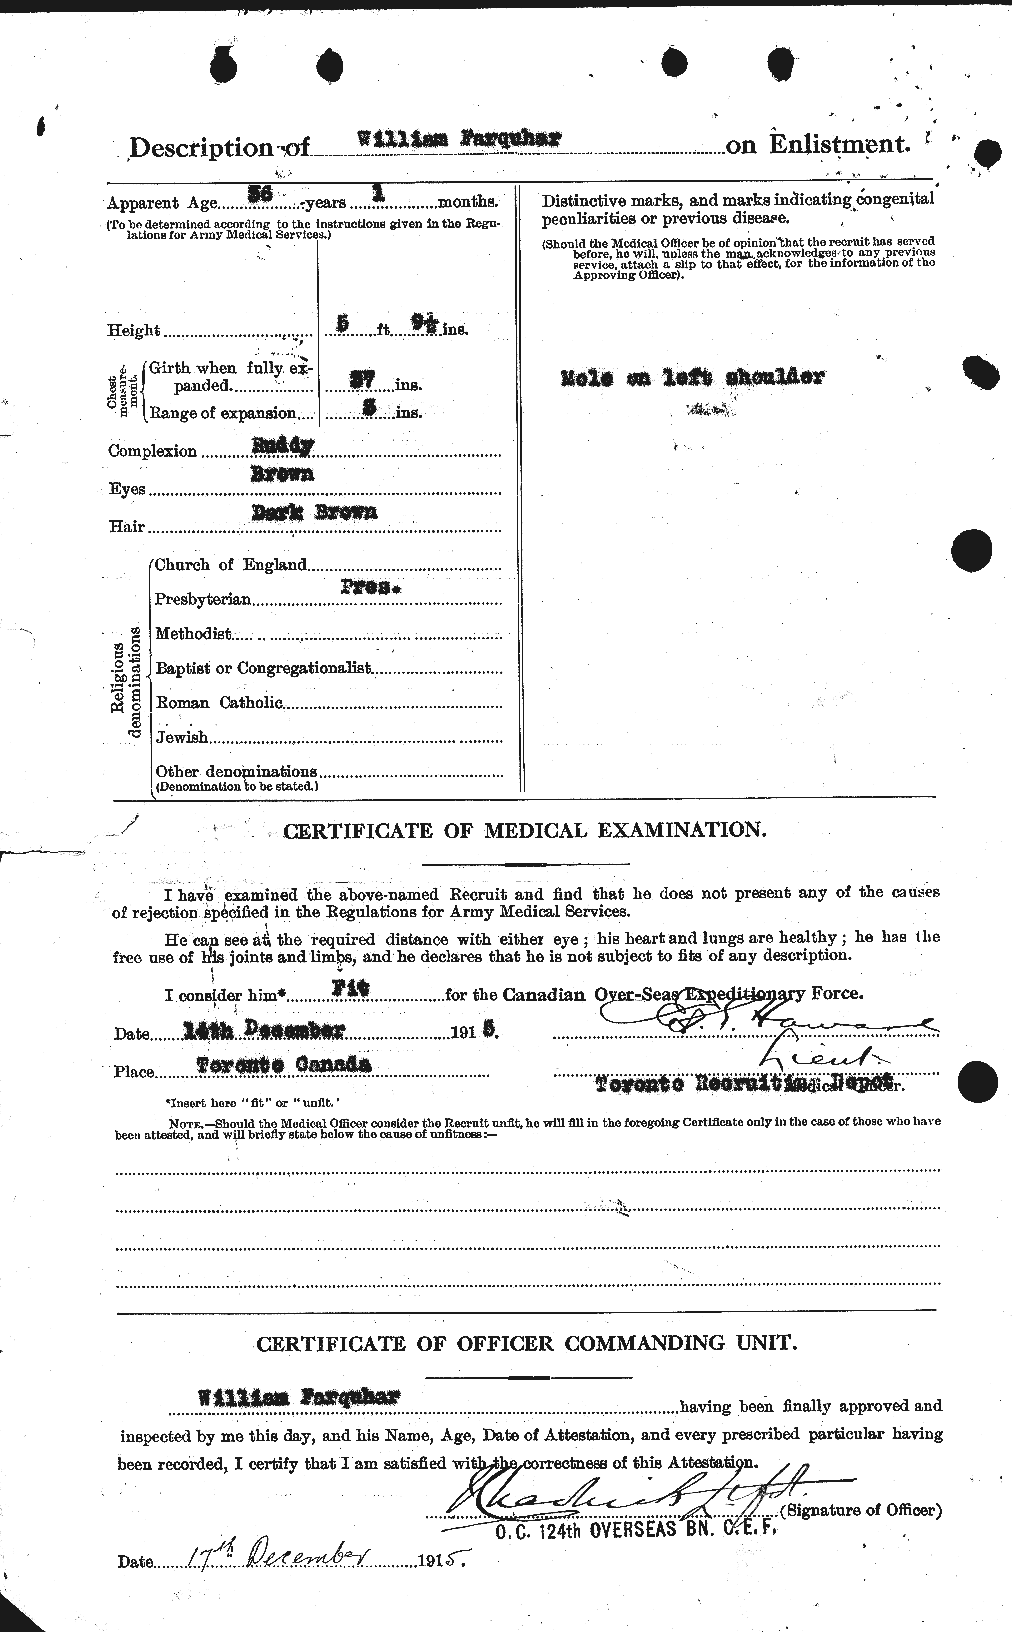 Dossiers du Personnel de la Première Guerre mondiale - CEC 319282b